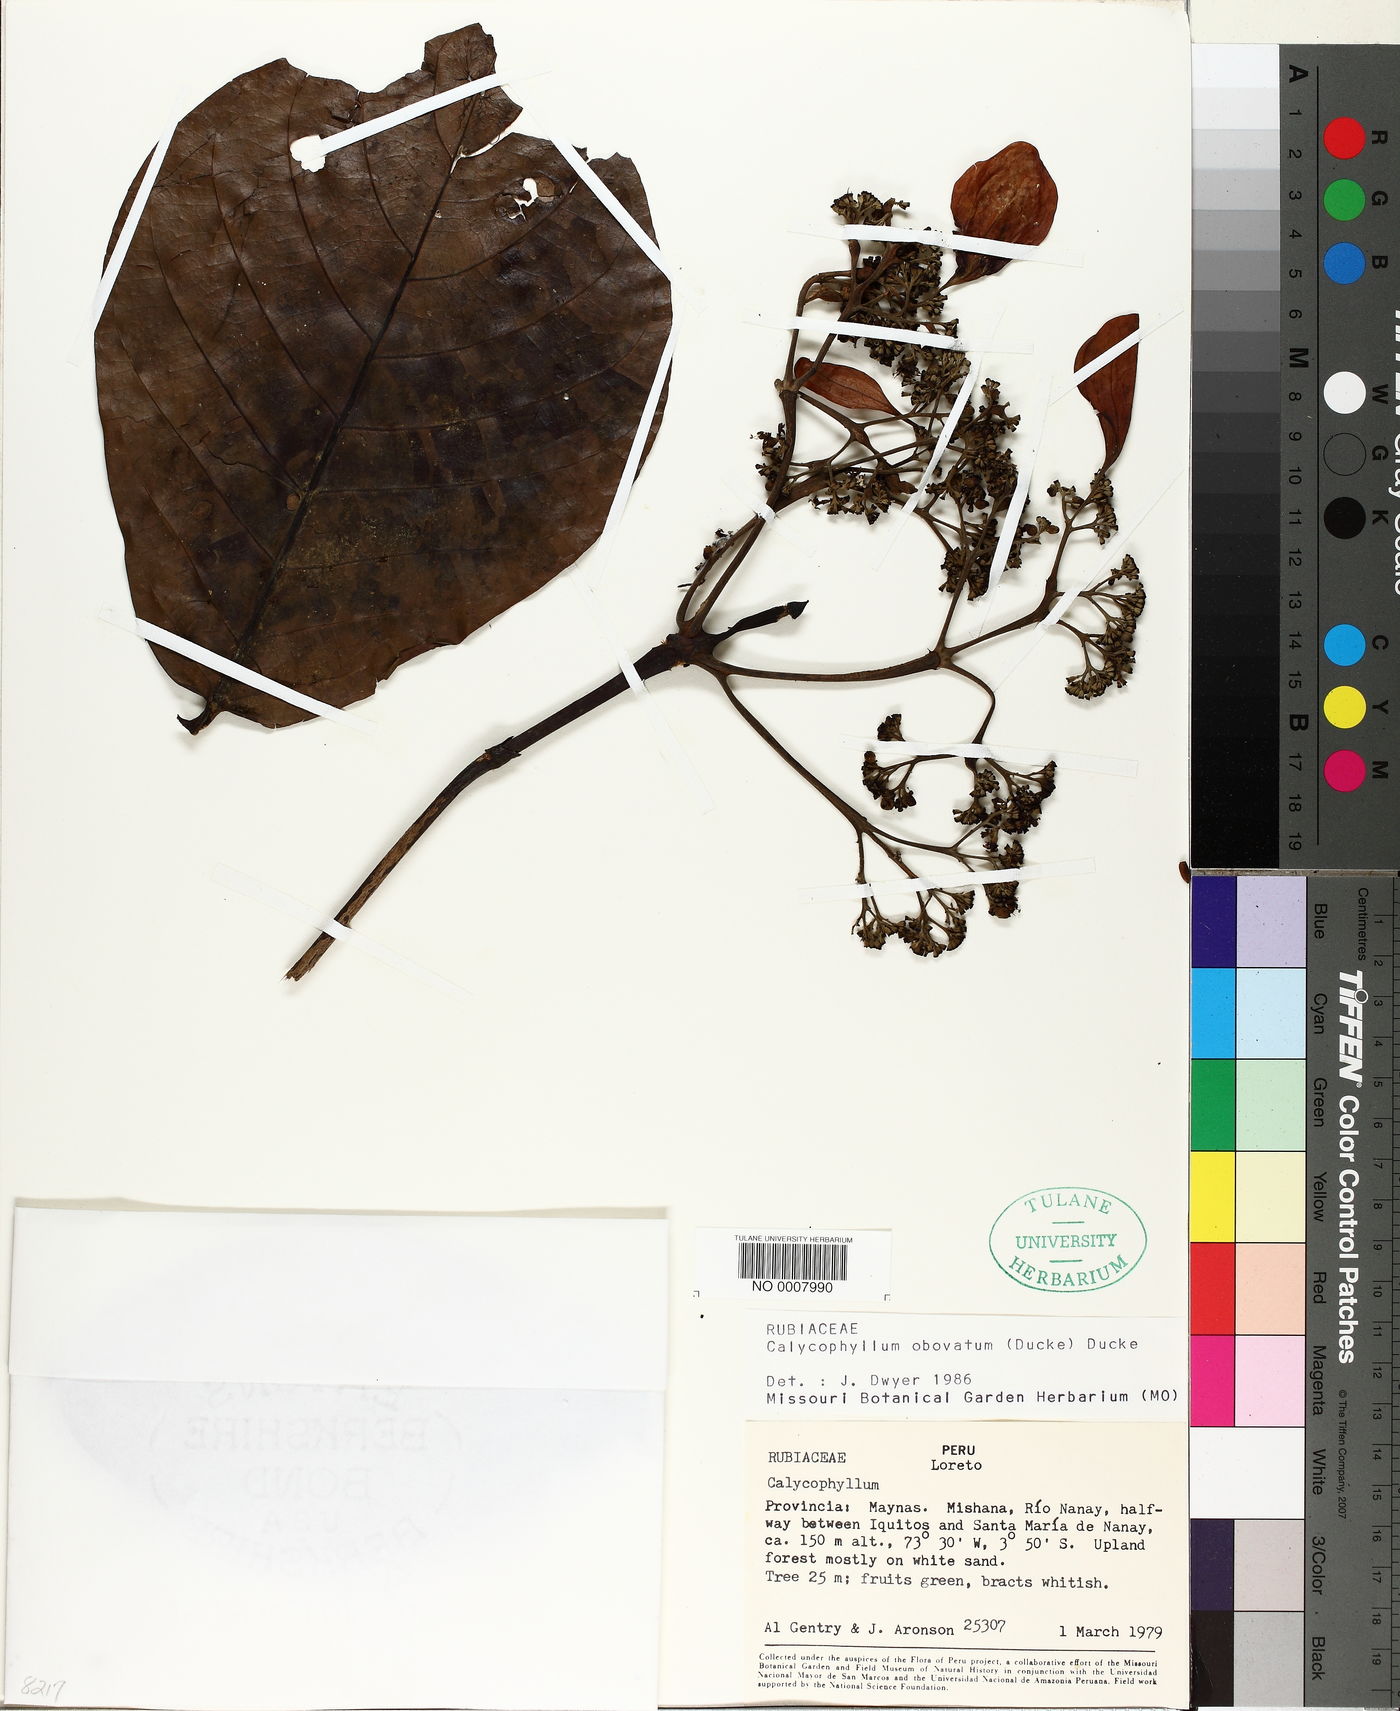 Calycophyllum obovatum image